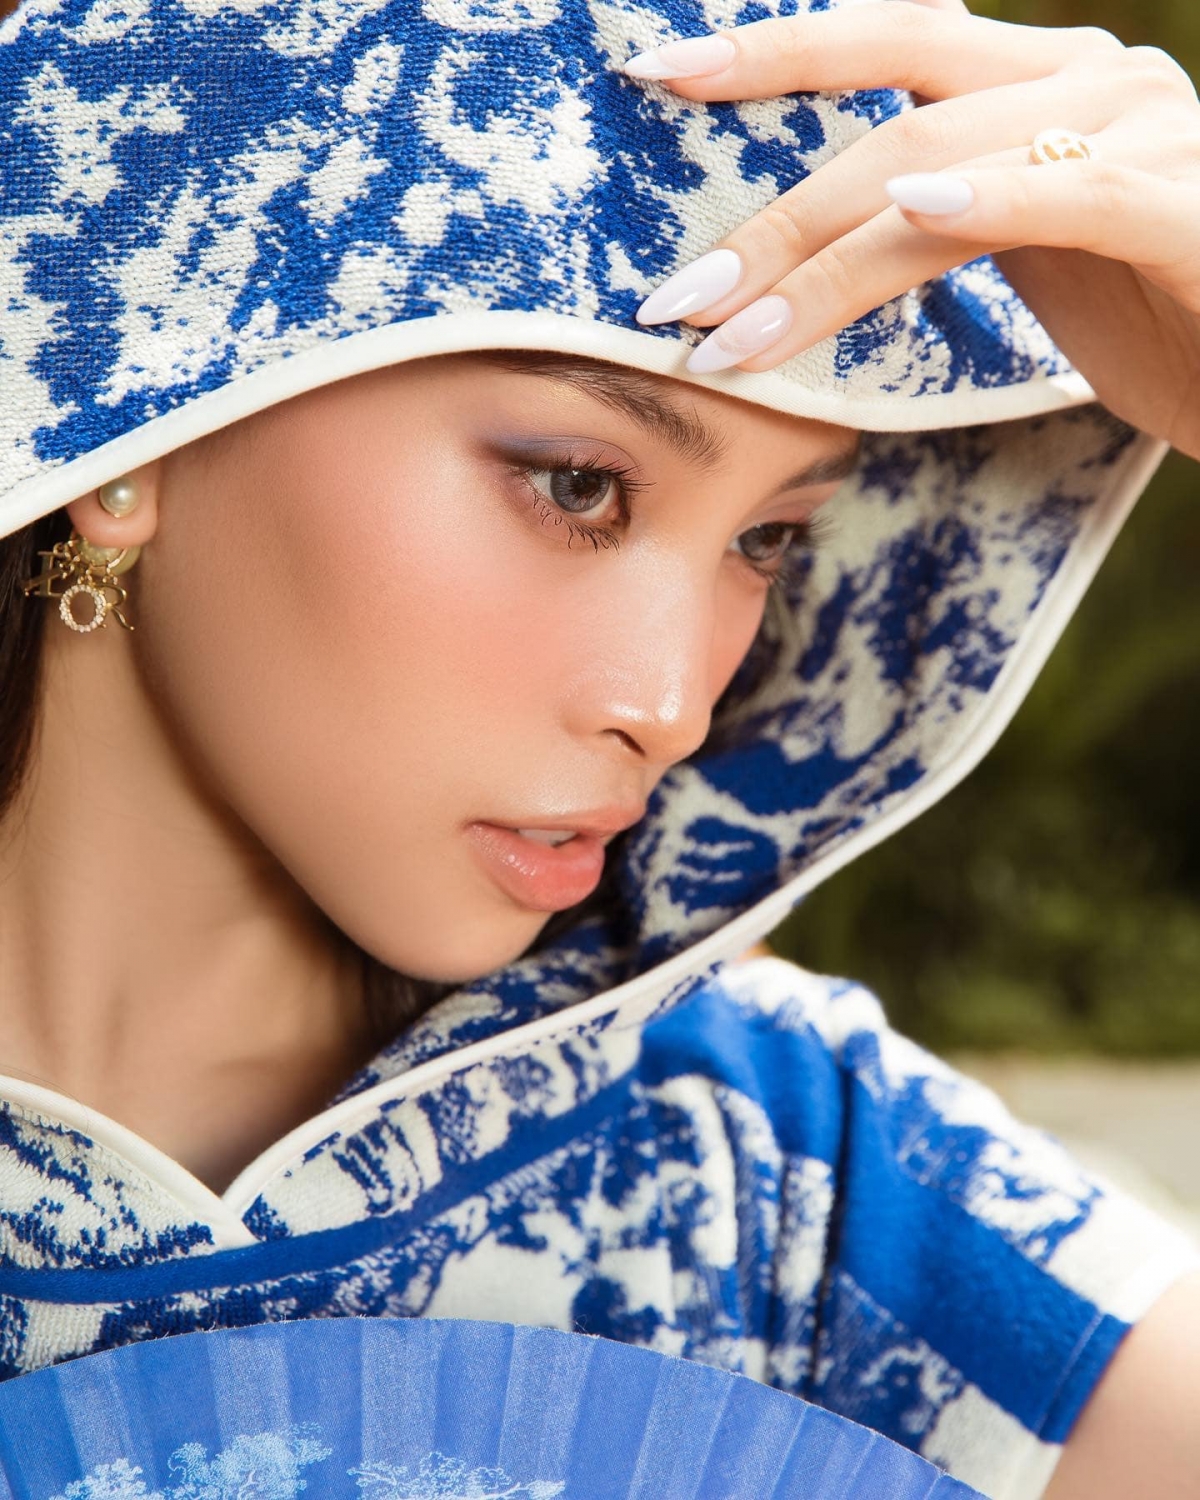 Hoa hậu Tiểu Vy đẹp kiêu sa với trang phục sắc xanh chủ đạo - Ảnh 4.